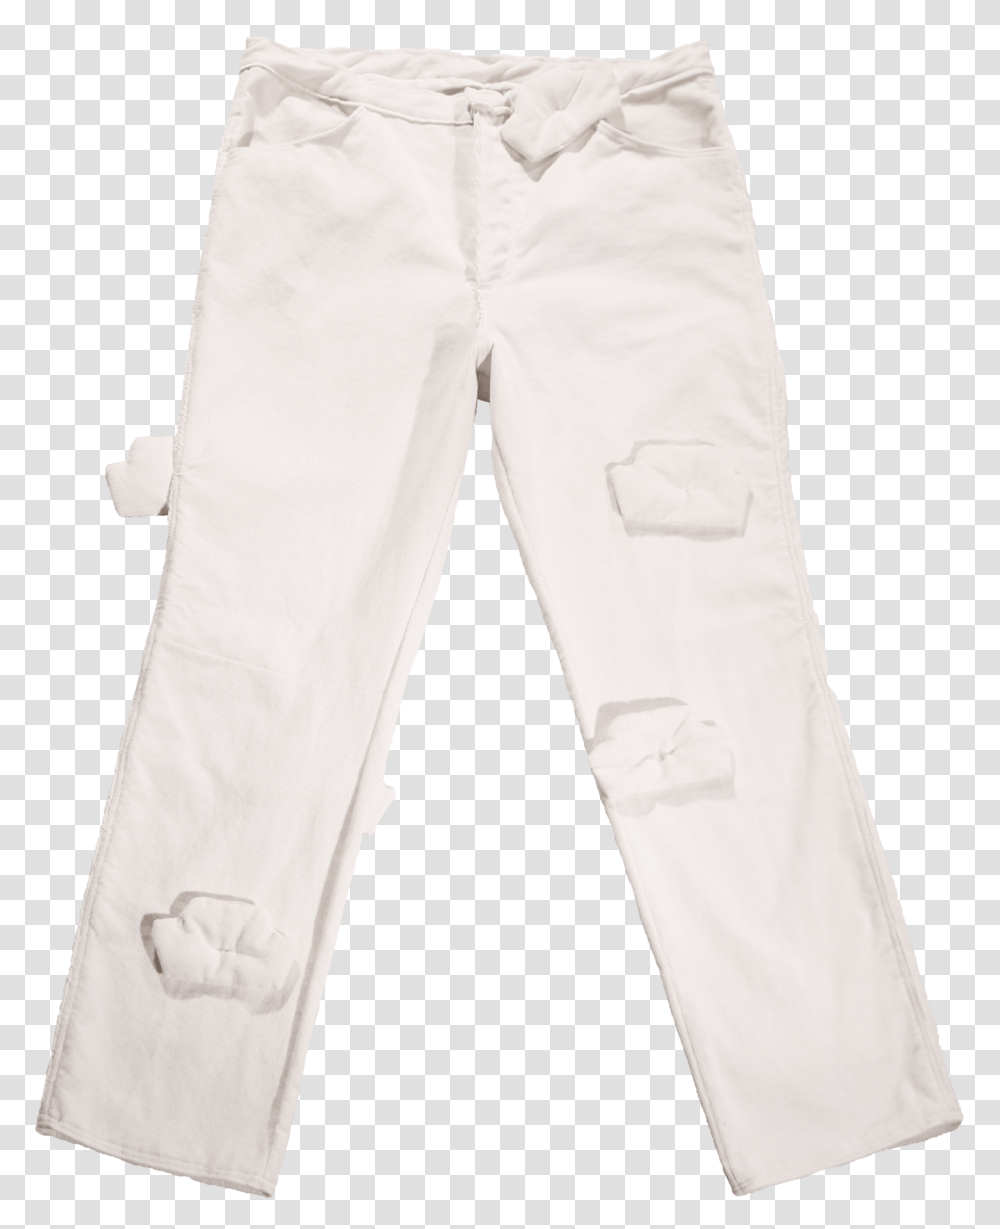 Pant Trousers, Pants, Apparel, Jeans Transparent Png